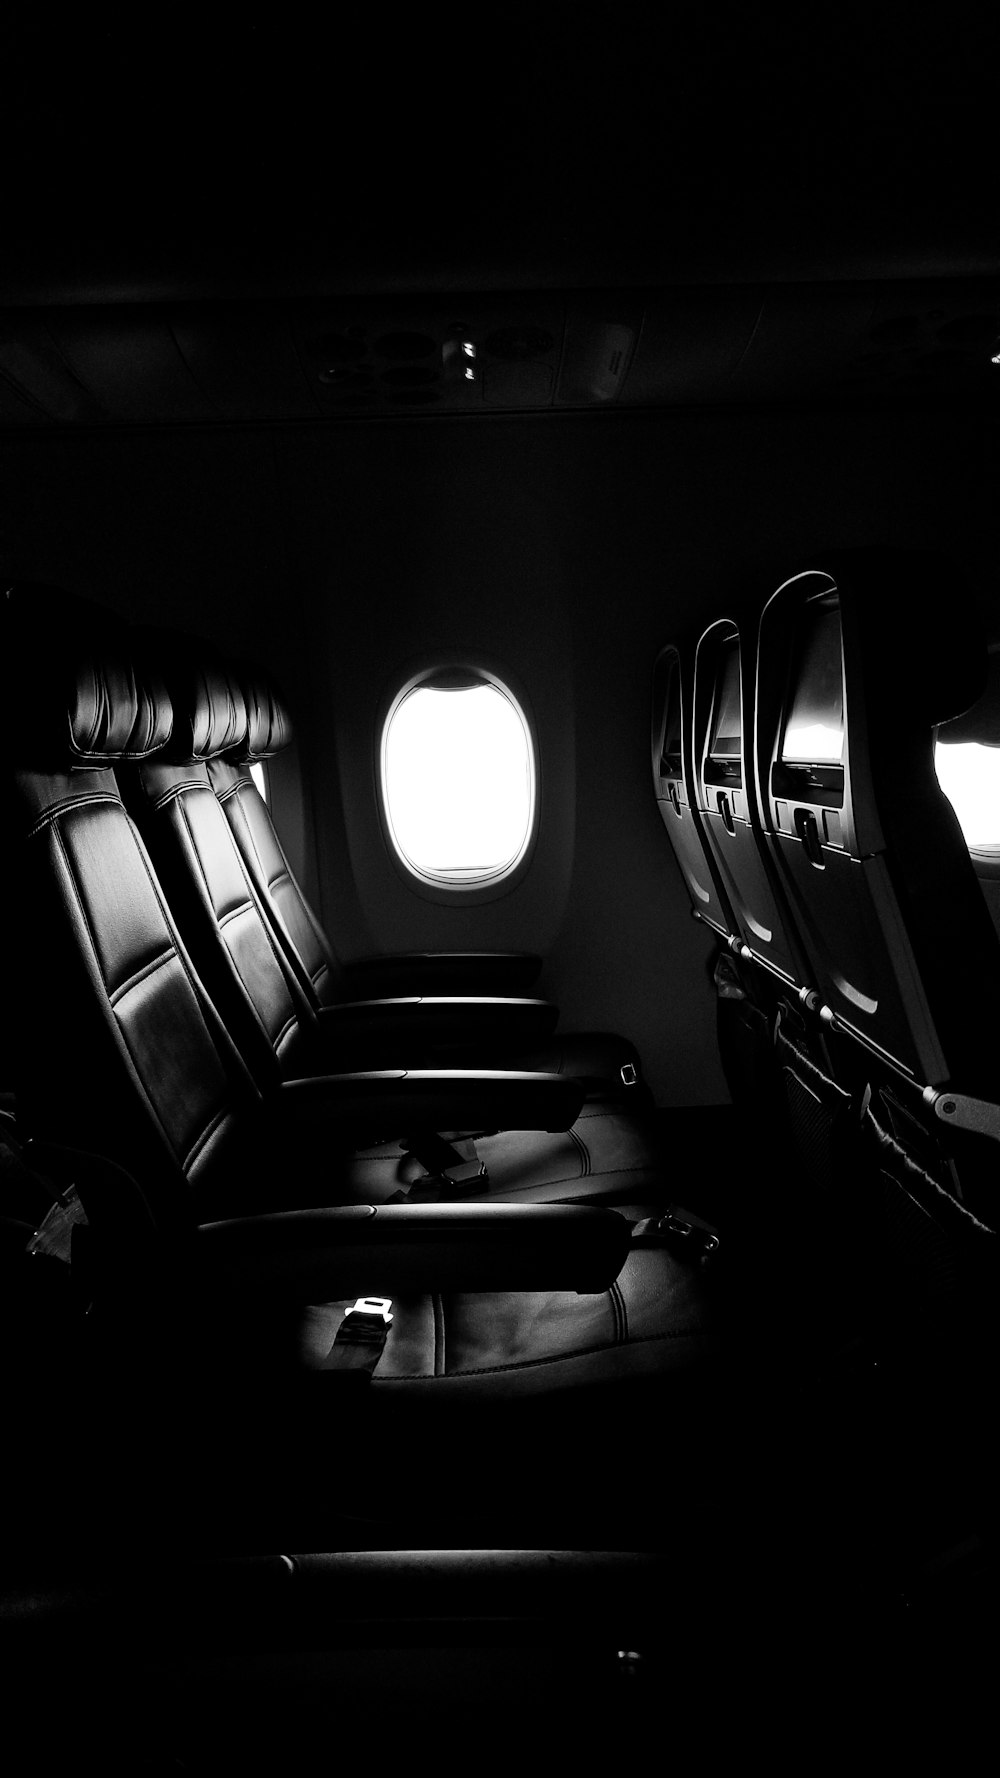 Leere Stühle des Flugzeugs